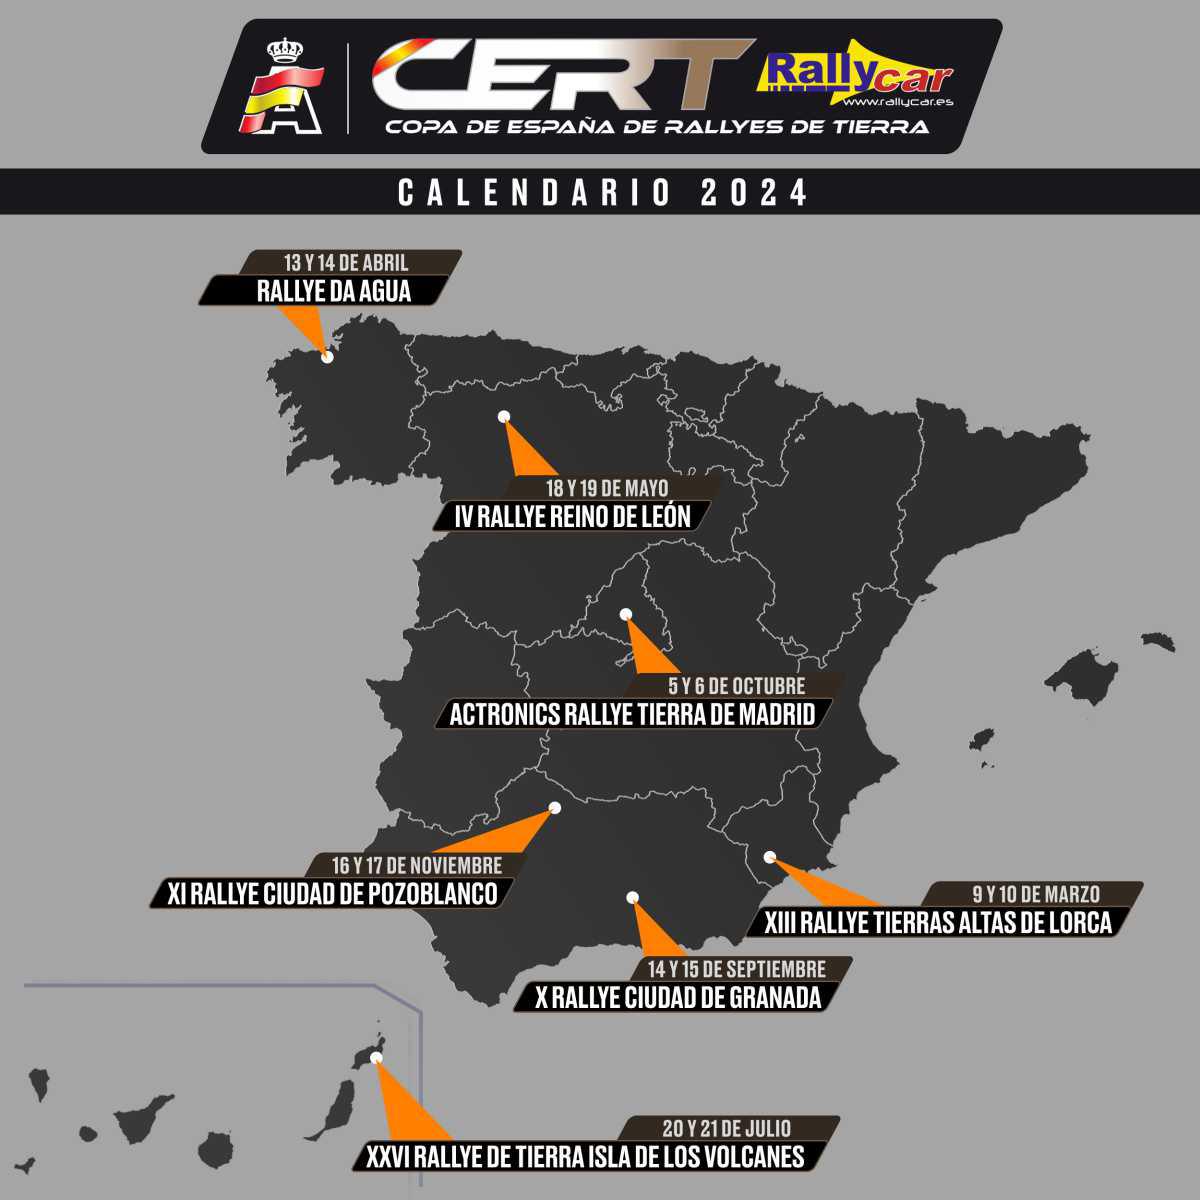 La CERT - Rallycar regresa esta temporada a Canarias